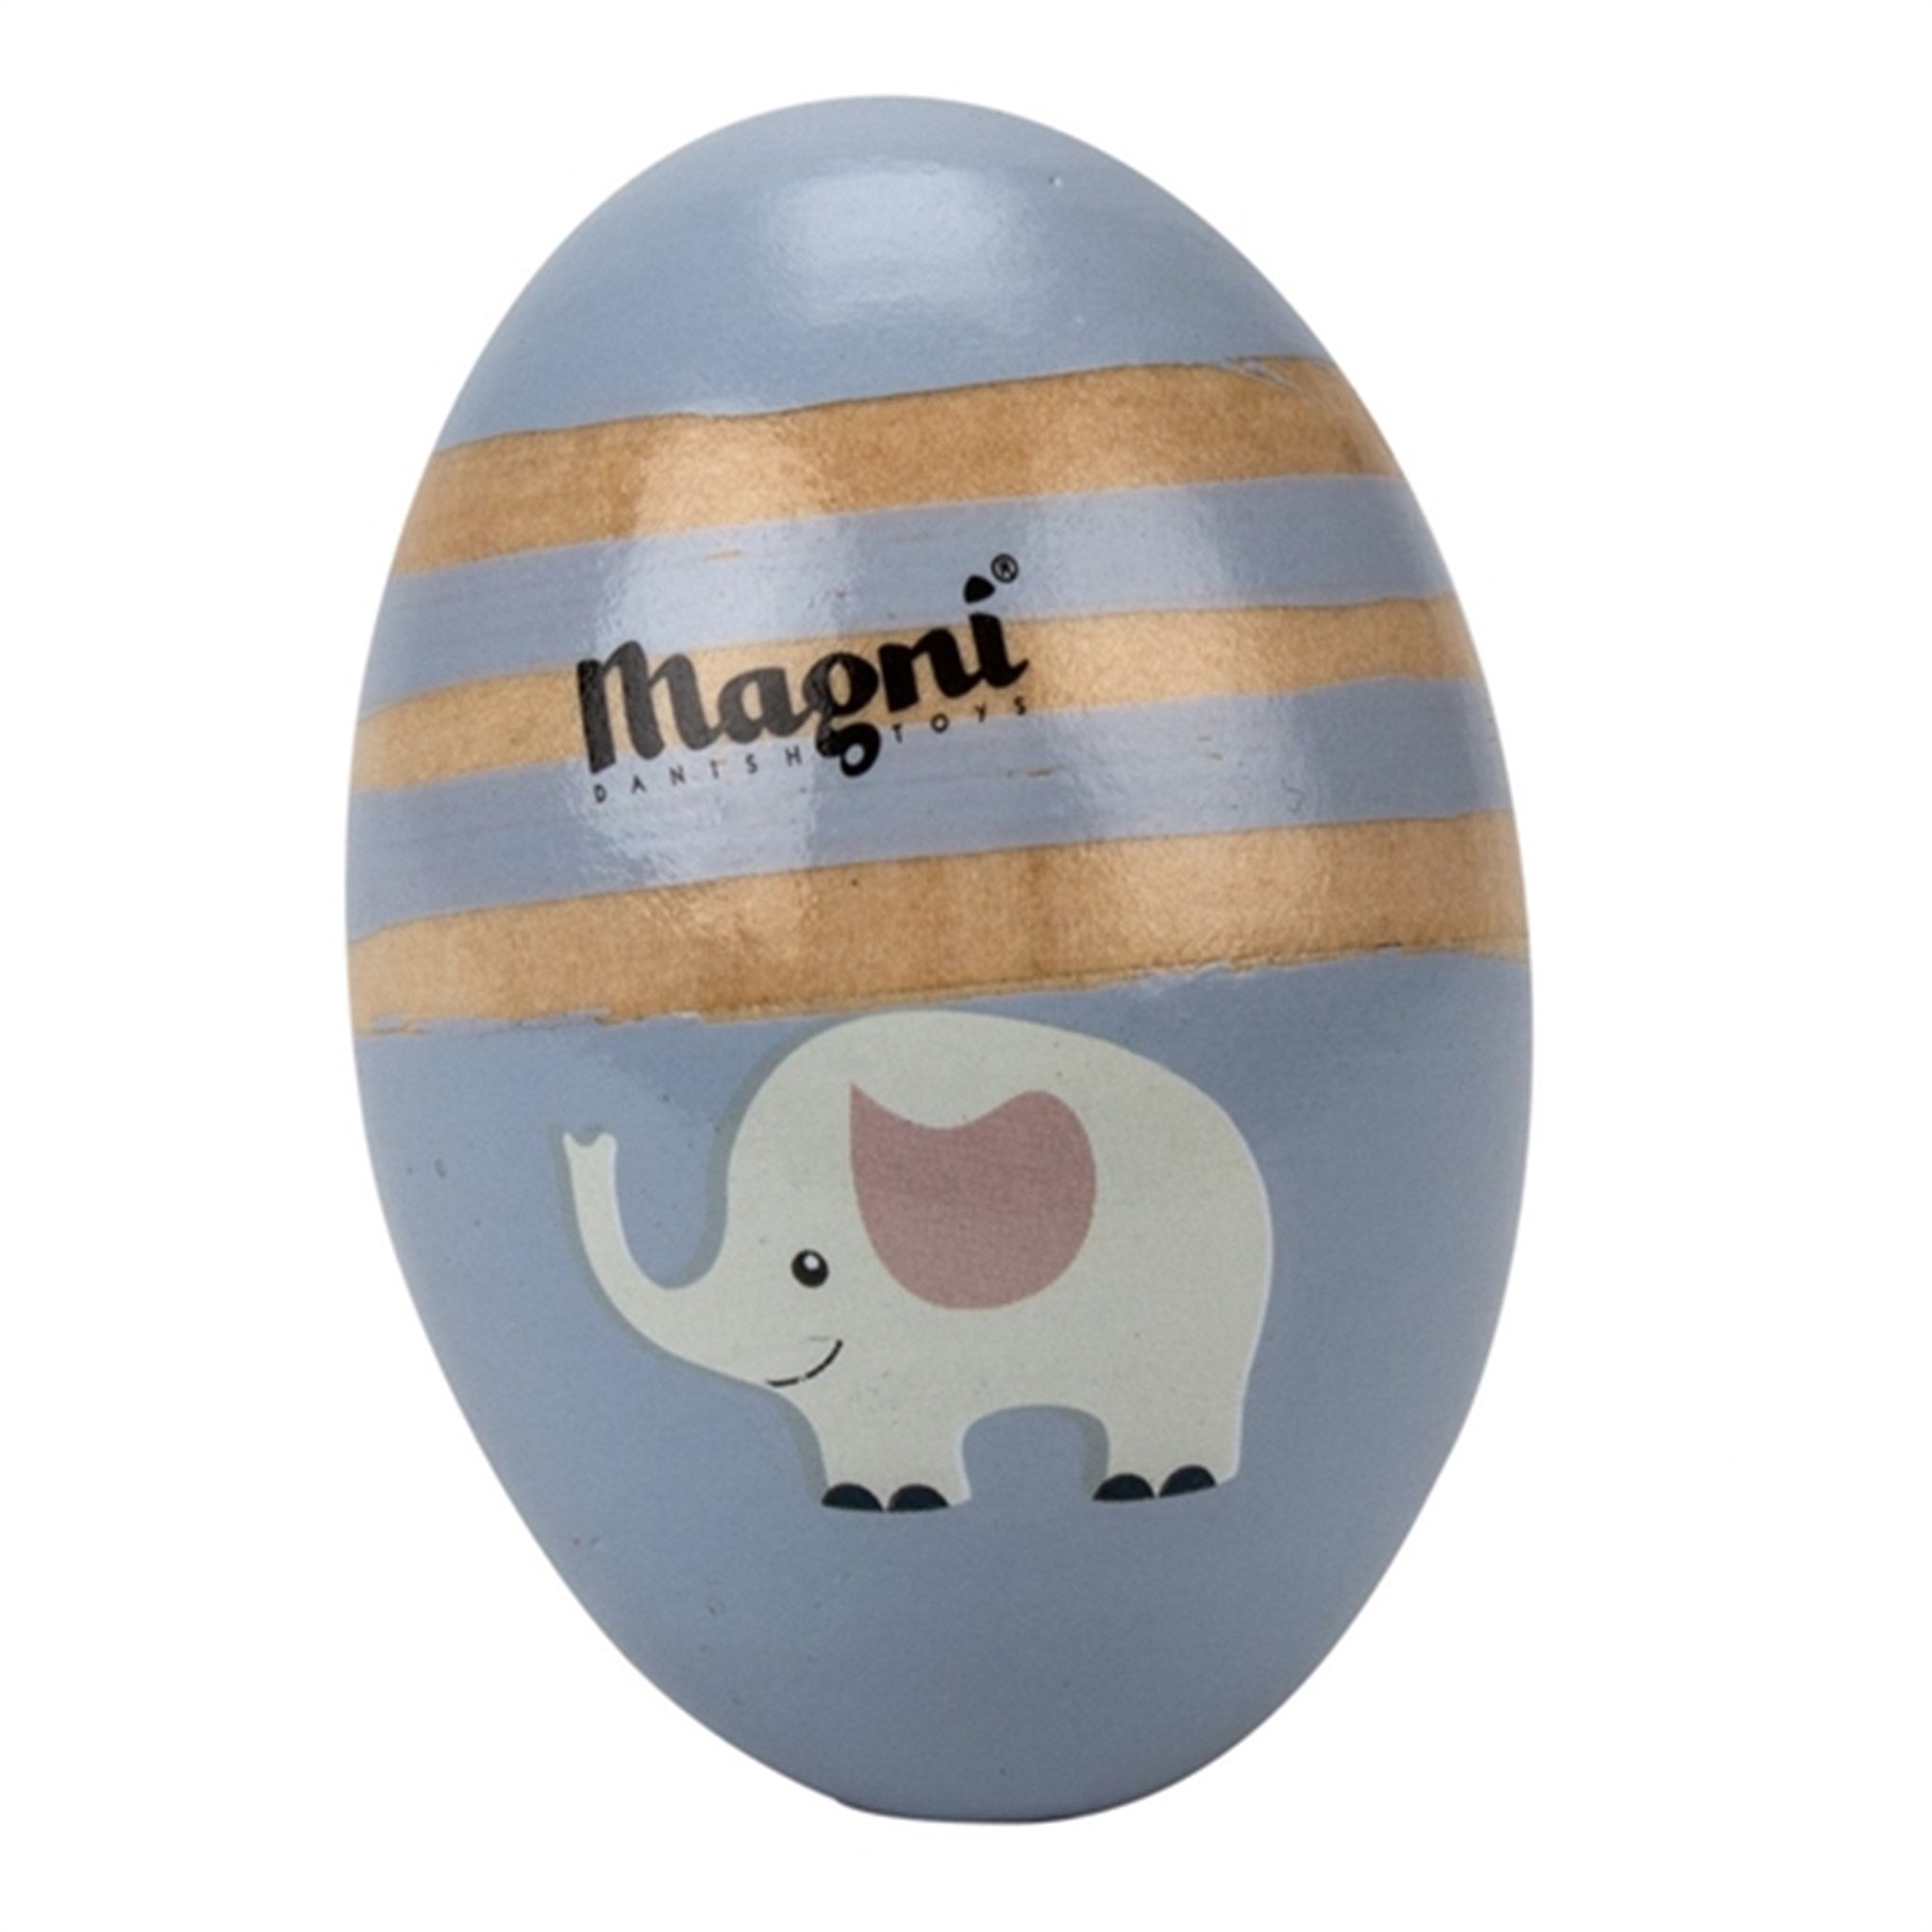 Magni Noisy Egg Blue - Elephant